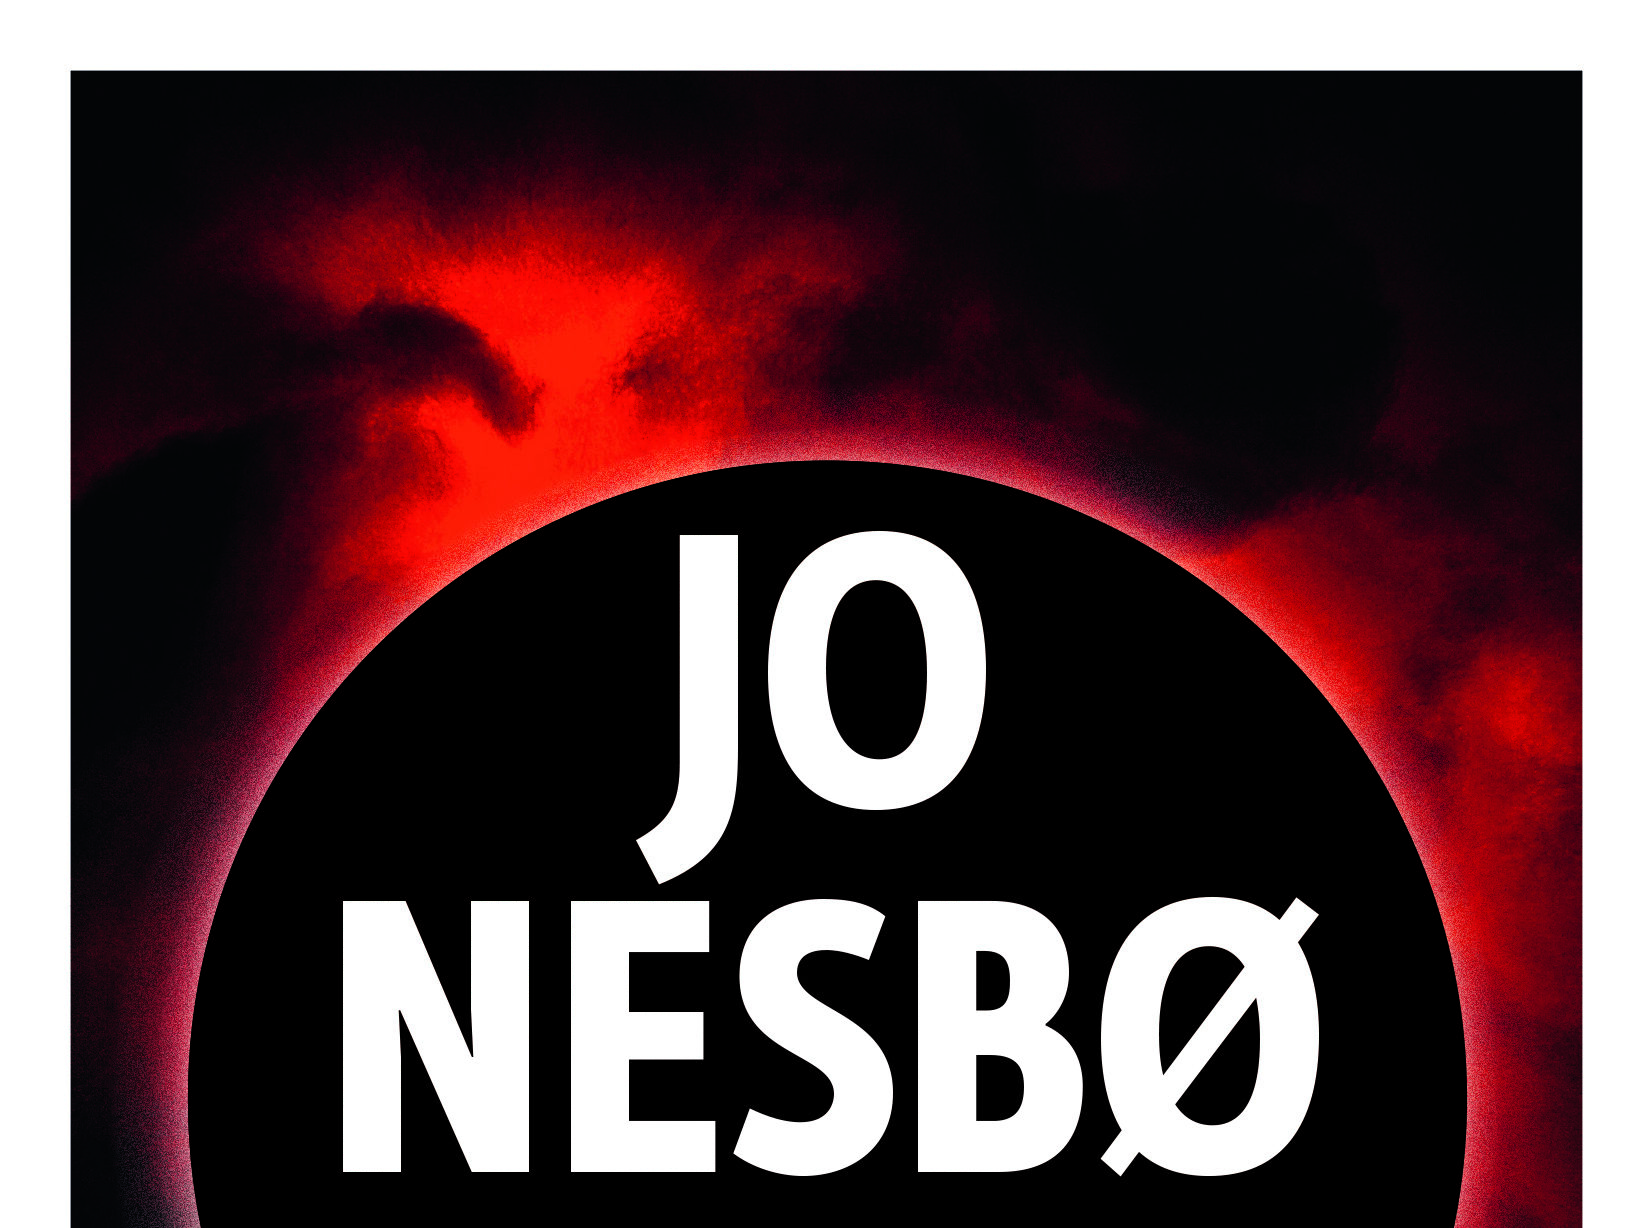 Eclipse totale / Jo Nesbo